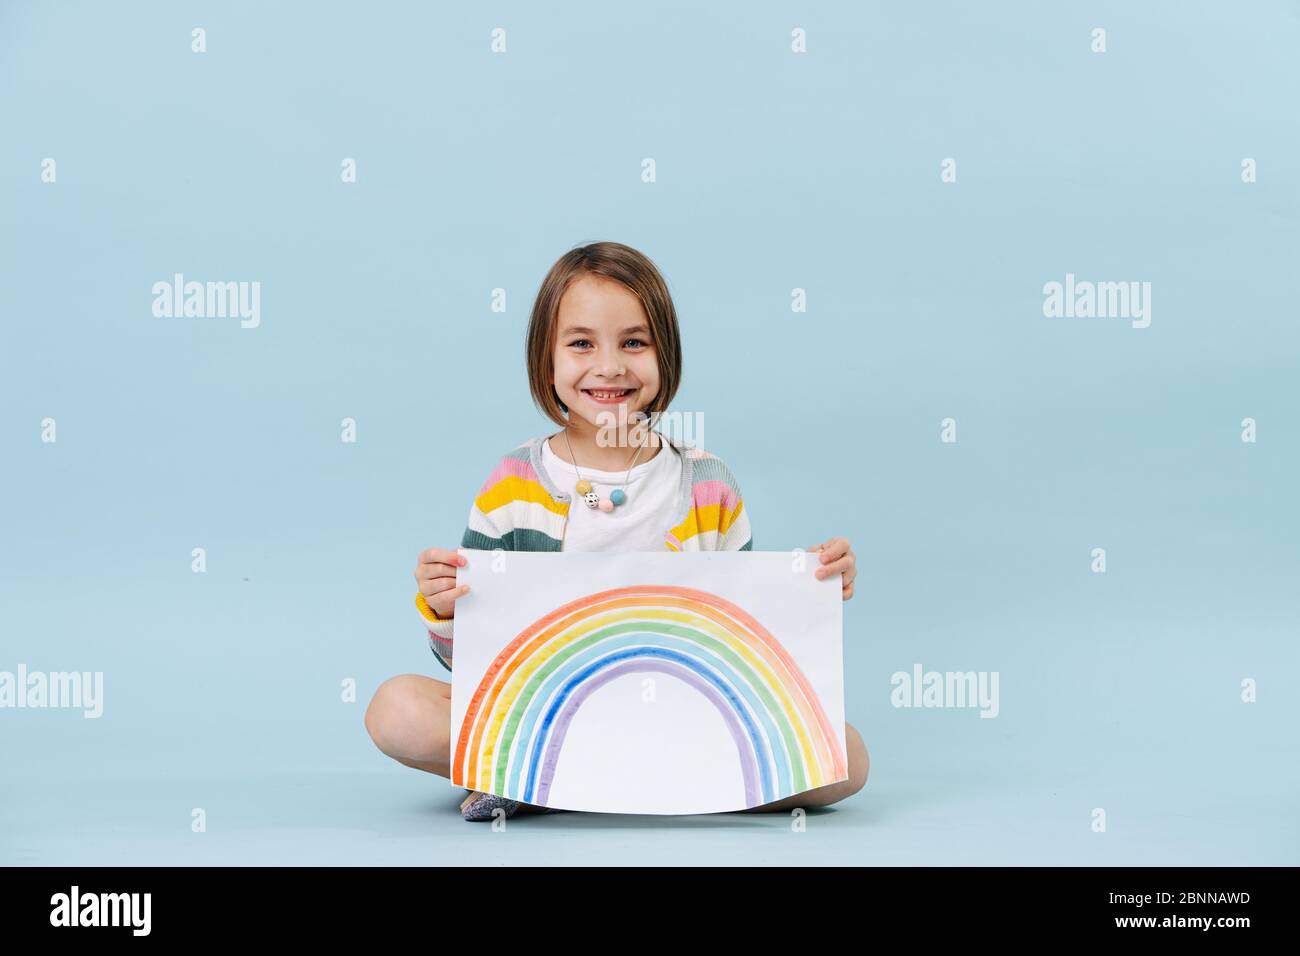 Fröhliches kleines Mädchen zeigt einen Regenbogen, den sie gerade gemalt hat Stockfoto